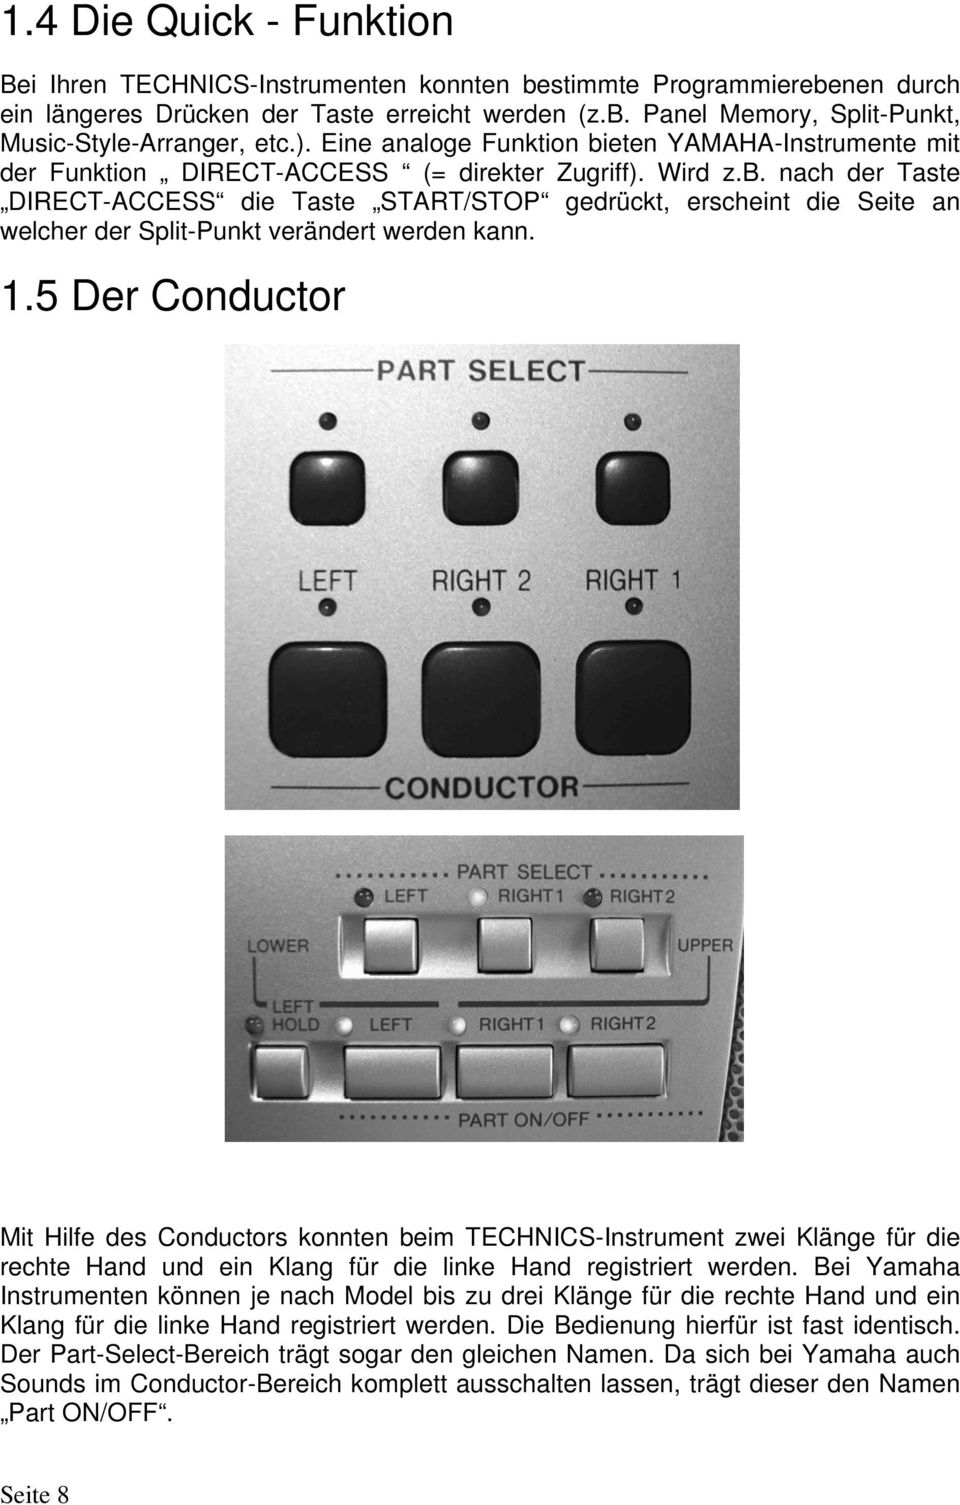 1.5 Der Conductor Mit Hilfe des Conductors konnten beim TECHNICS-Instrument zwei Klänge für die rechte Hand und ein Klang für die linke Hand registriert werden.